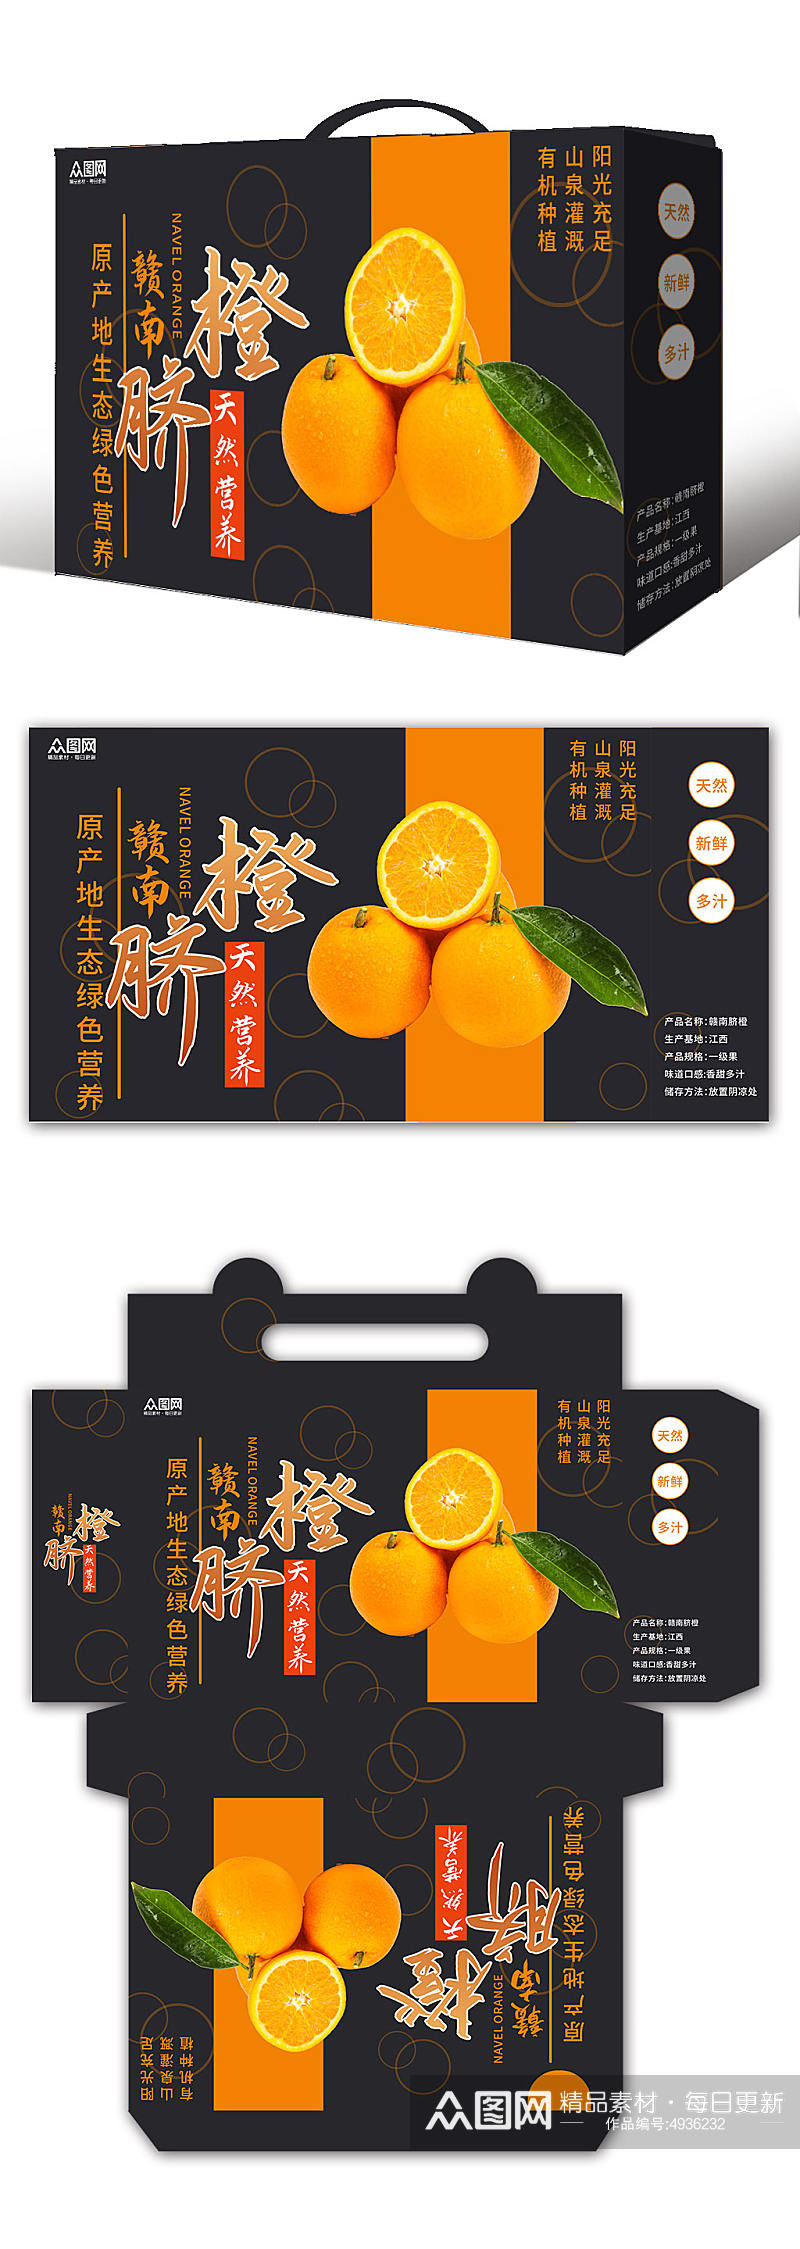 脐橙鲜橙橙子礼盒包装设计素材